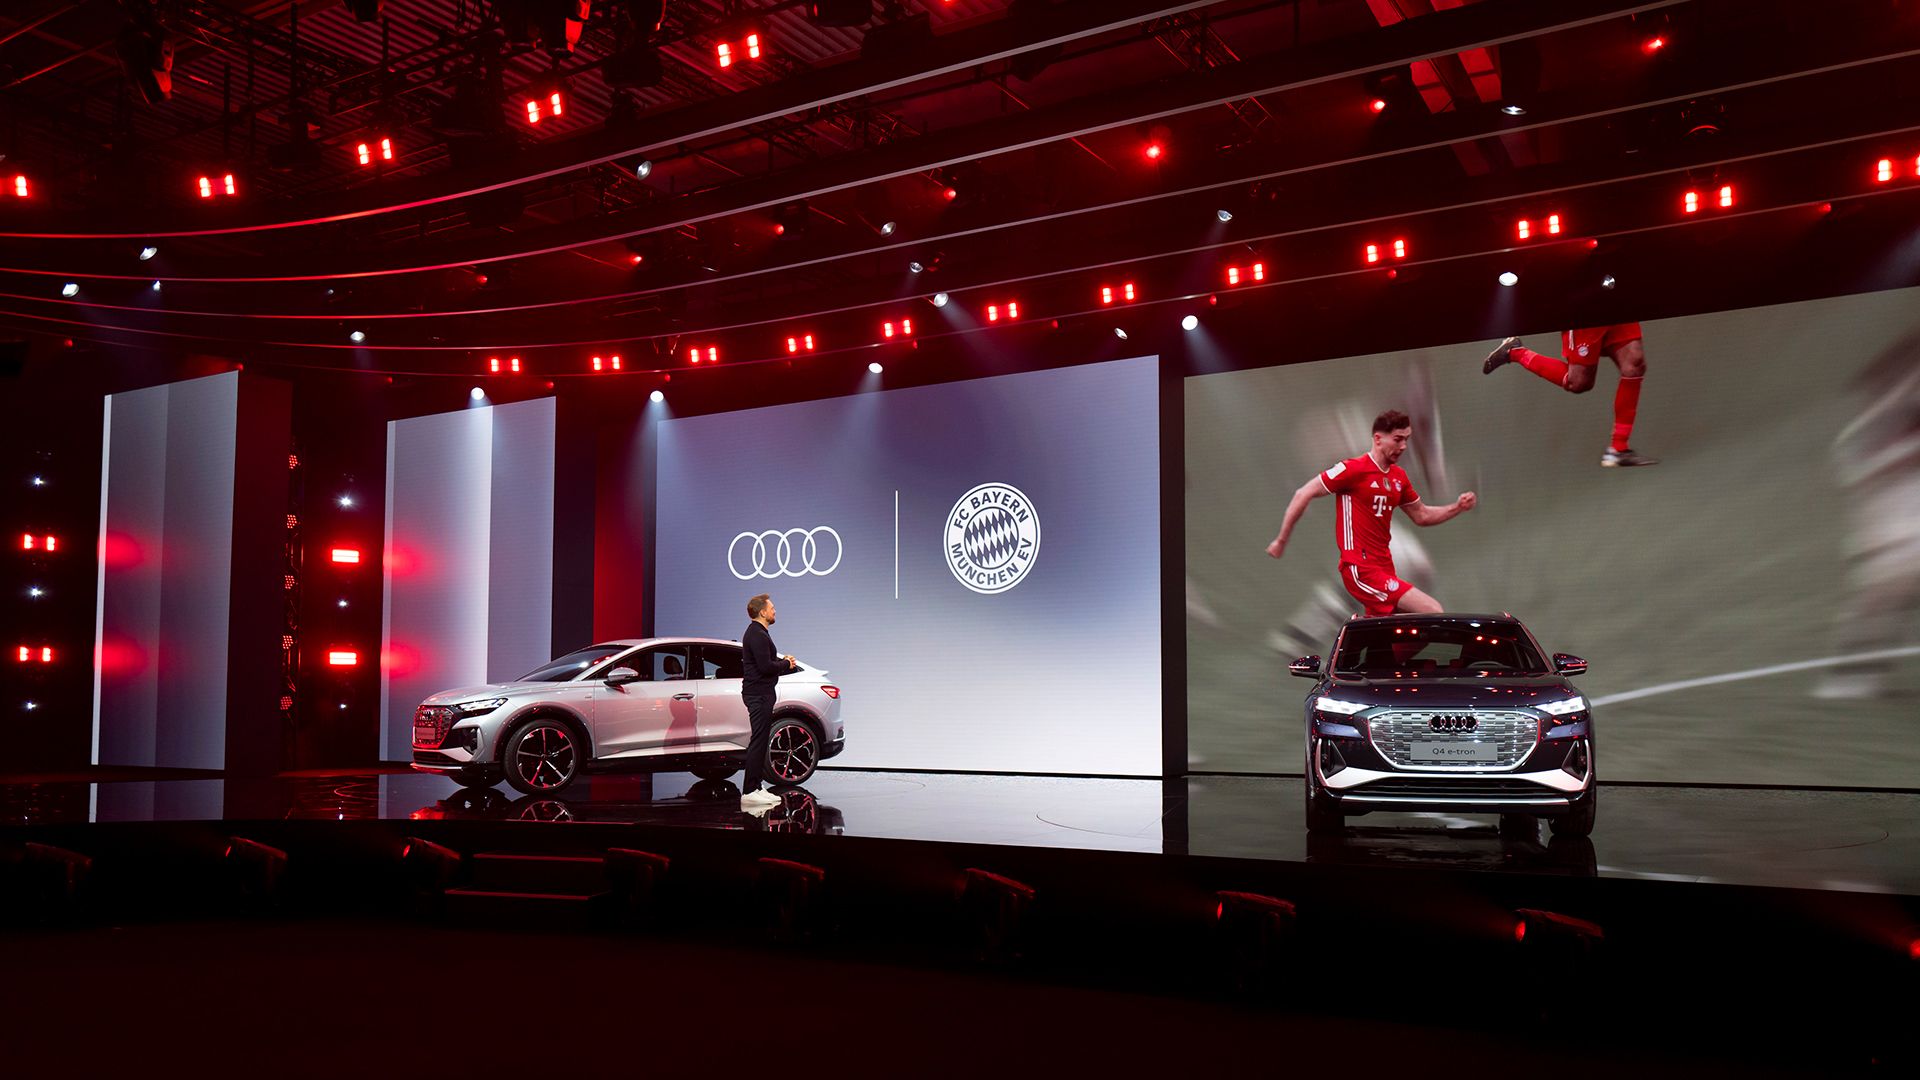 舞台上展示了两款奥迪车型。屏幕显示着足球运动员们。